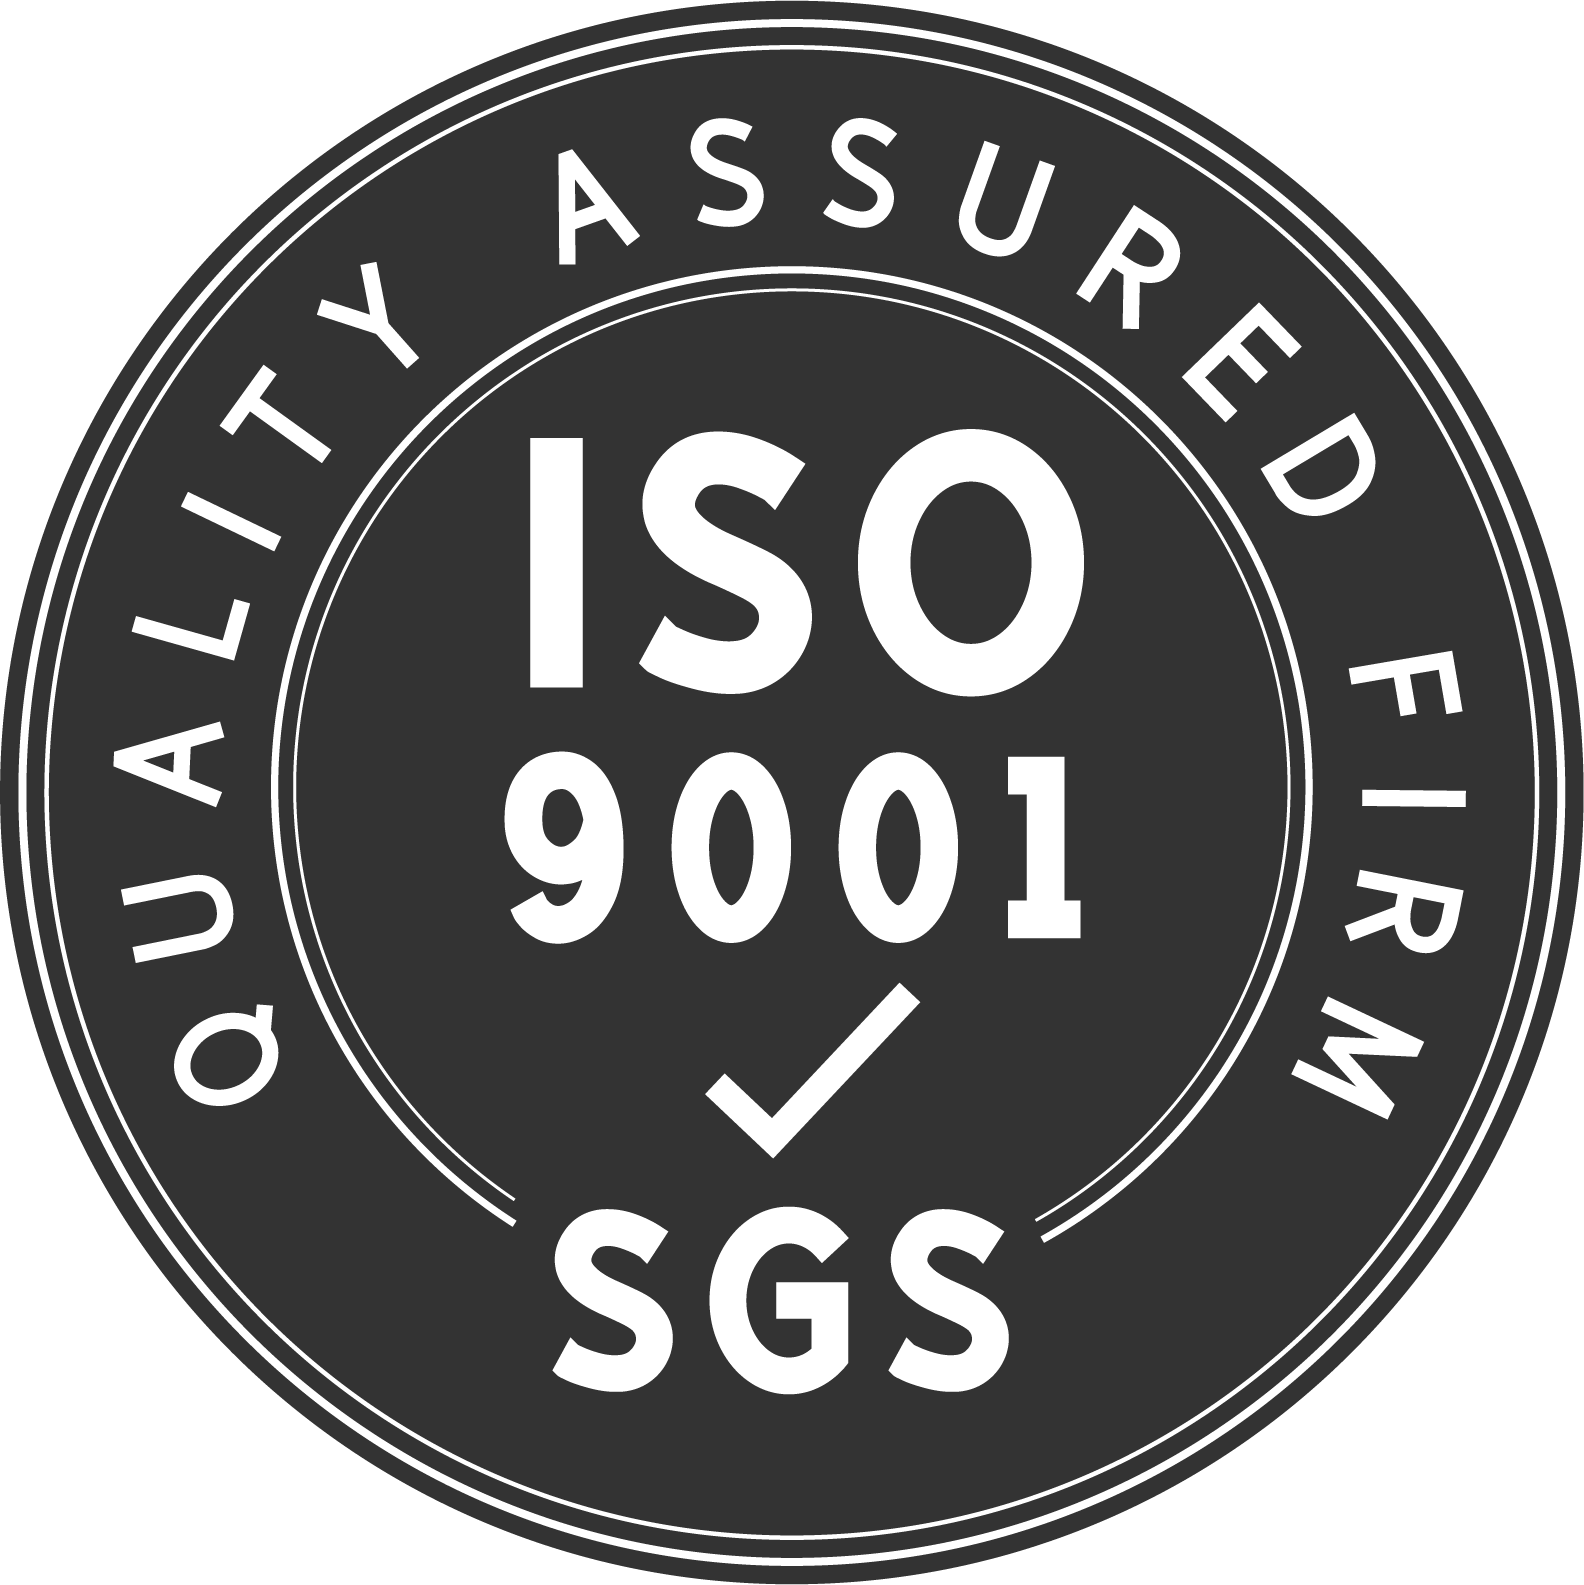 Onze fabriek is ISO9001:2005 gecertificeerde fabrikant van hoogwaardige producten